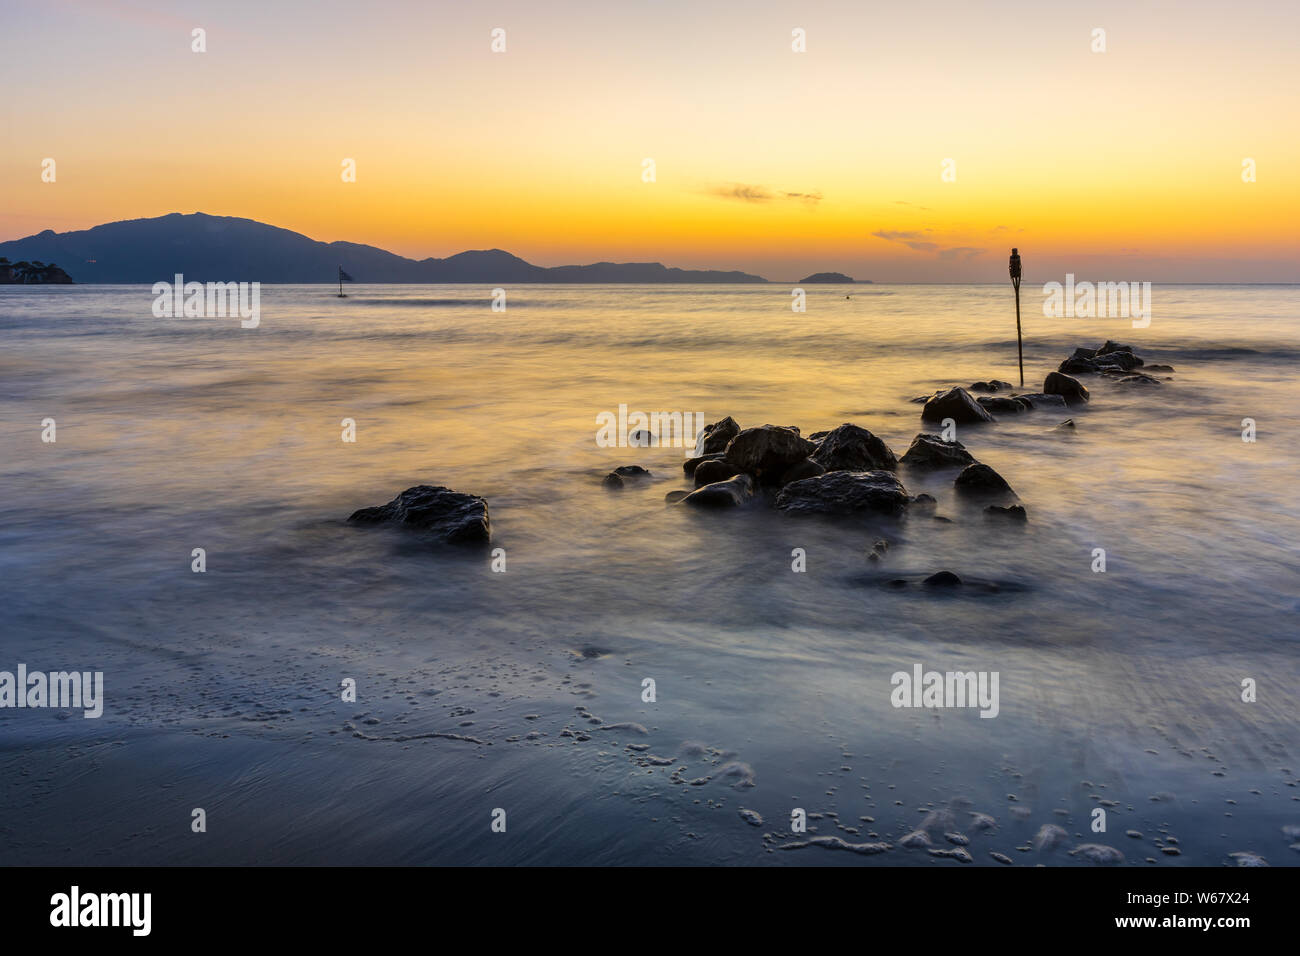 Romantischen sonnenaufgang Stimmung im Stillen Ozean Wasser und Steine am Strand Stockfoto